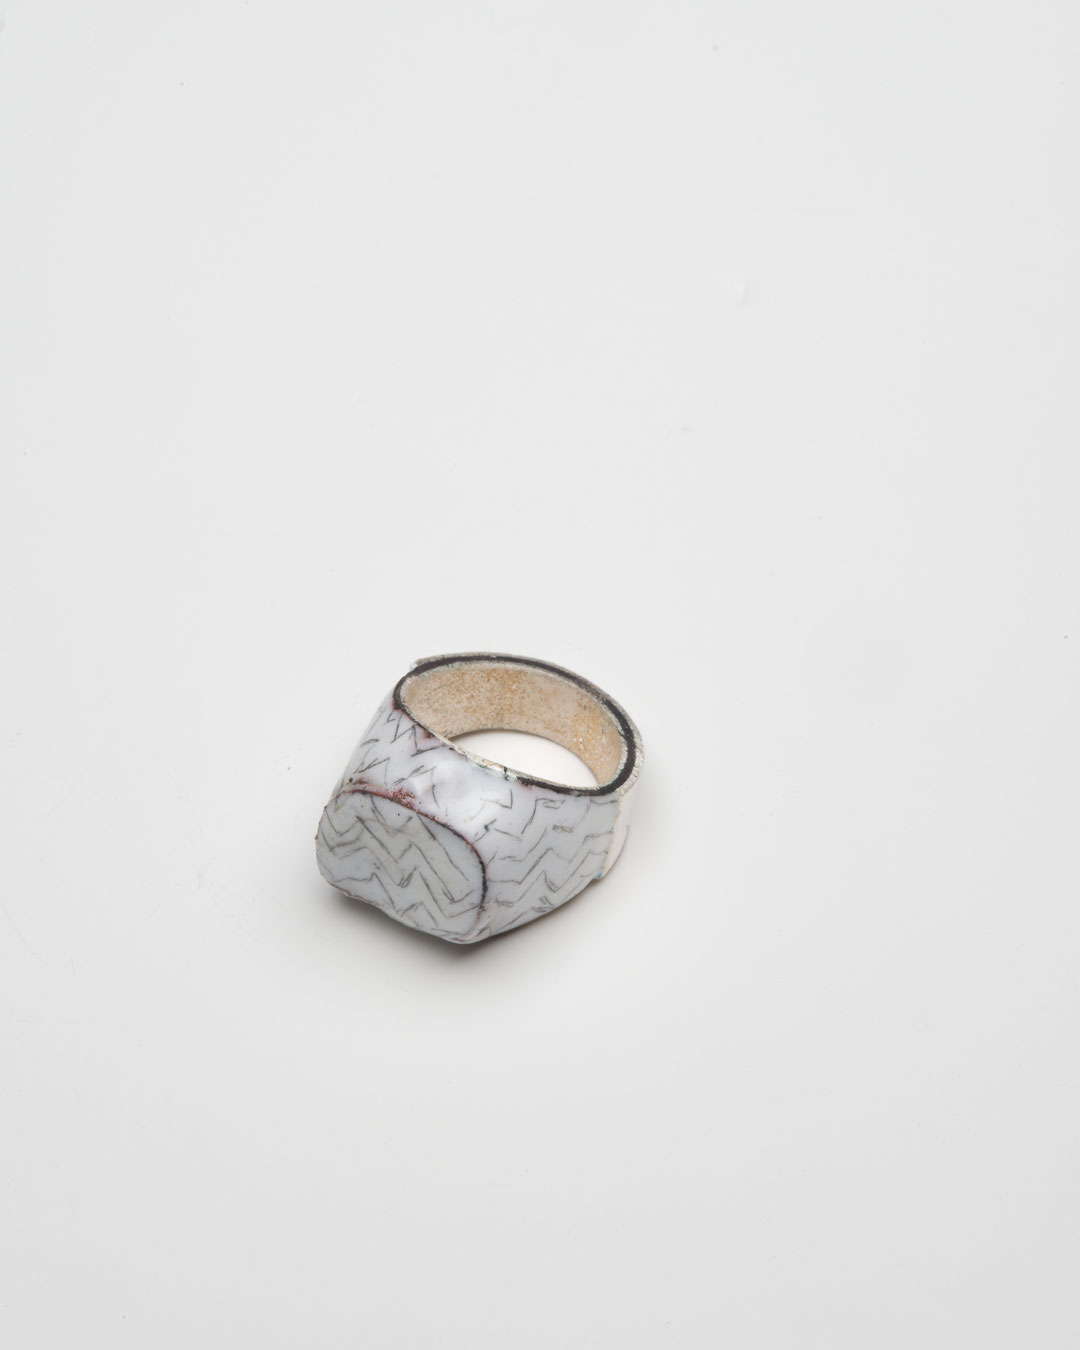 Aaron Decker, Charlie, 2018, ring; enamel, copper, silver, €1000